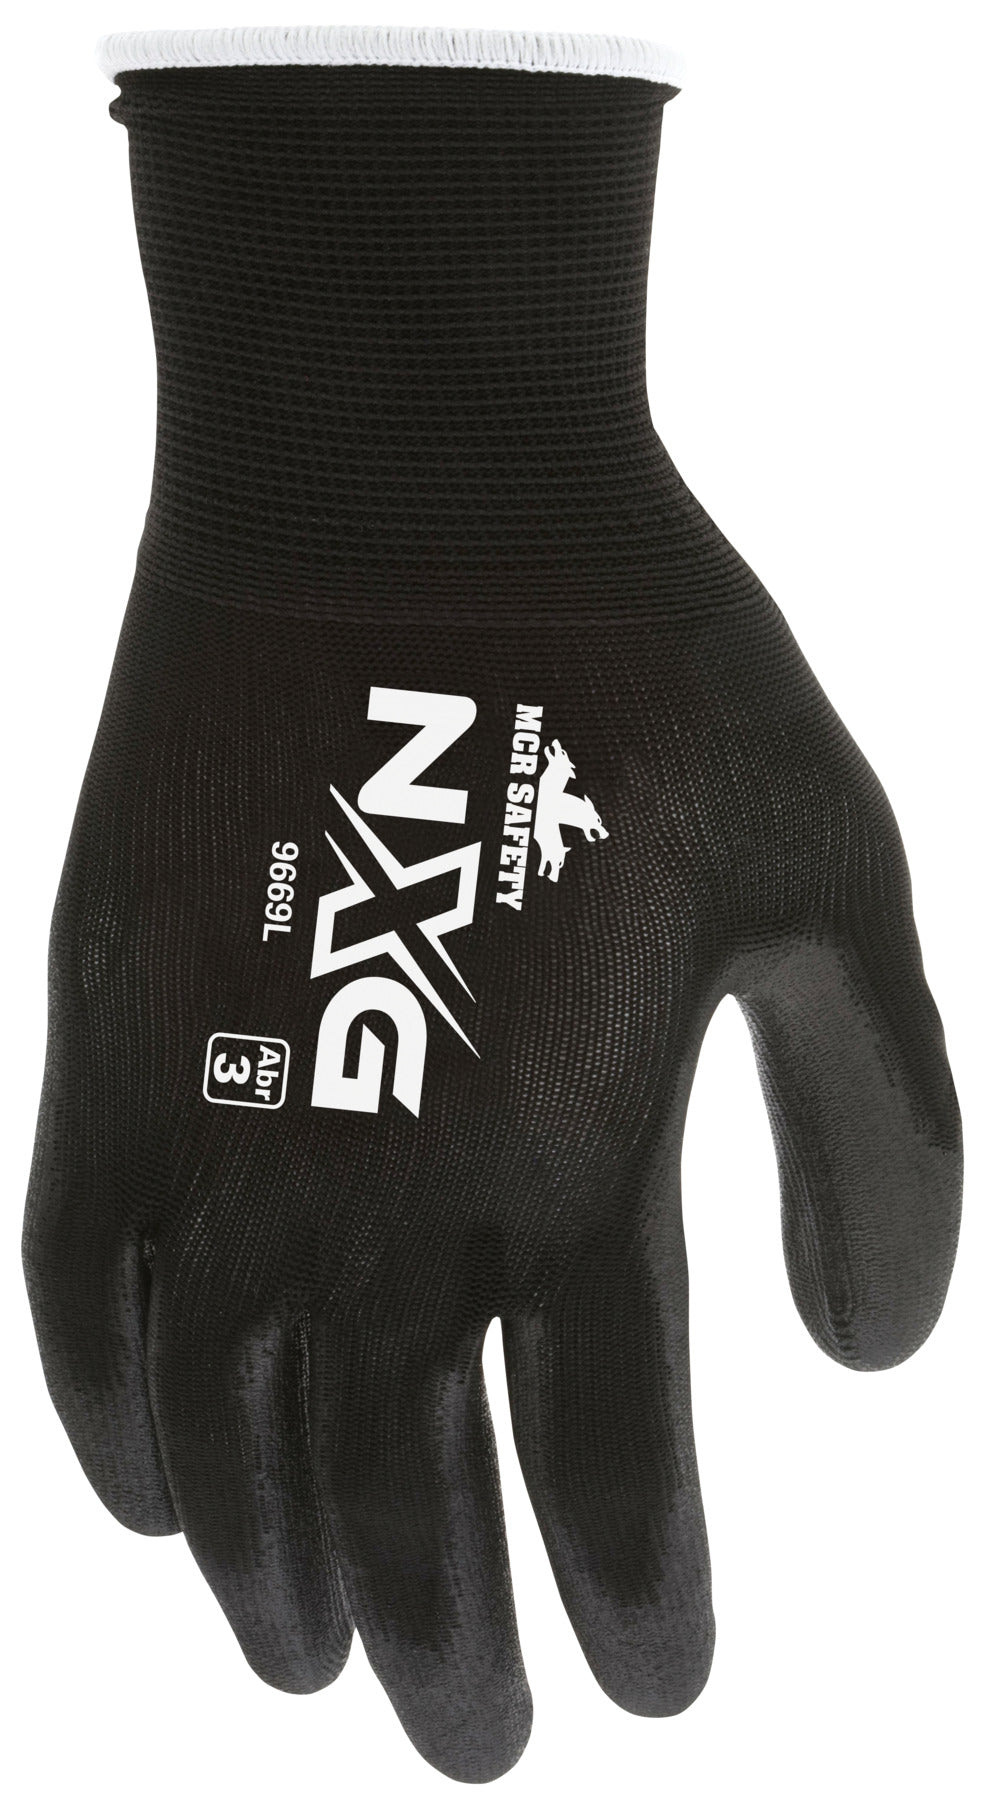 9669 - MCR Safety NXG® Work Gloves